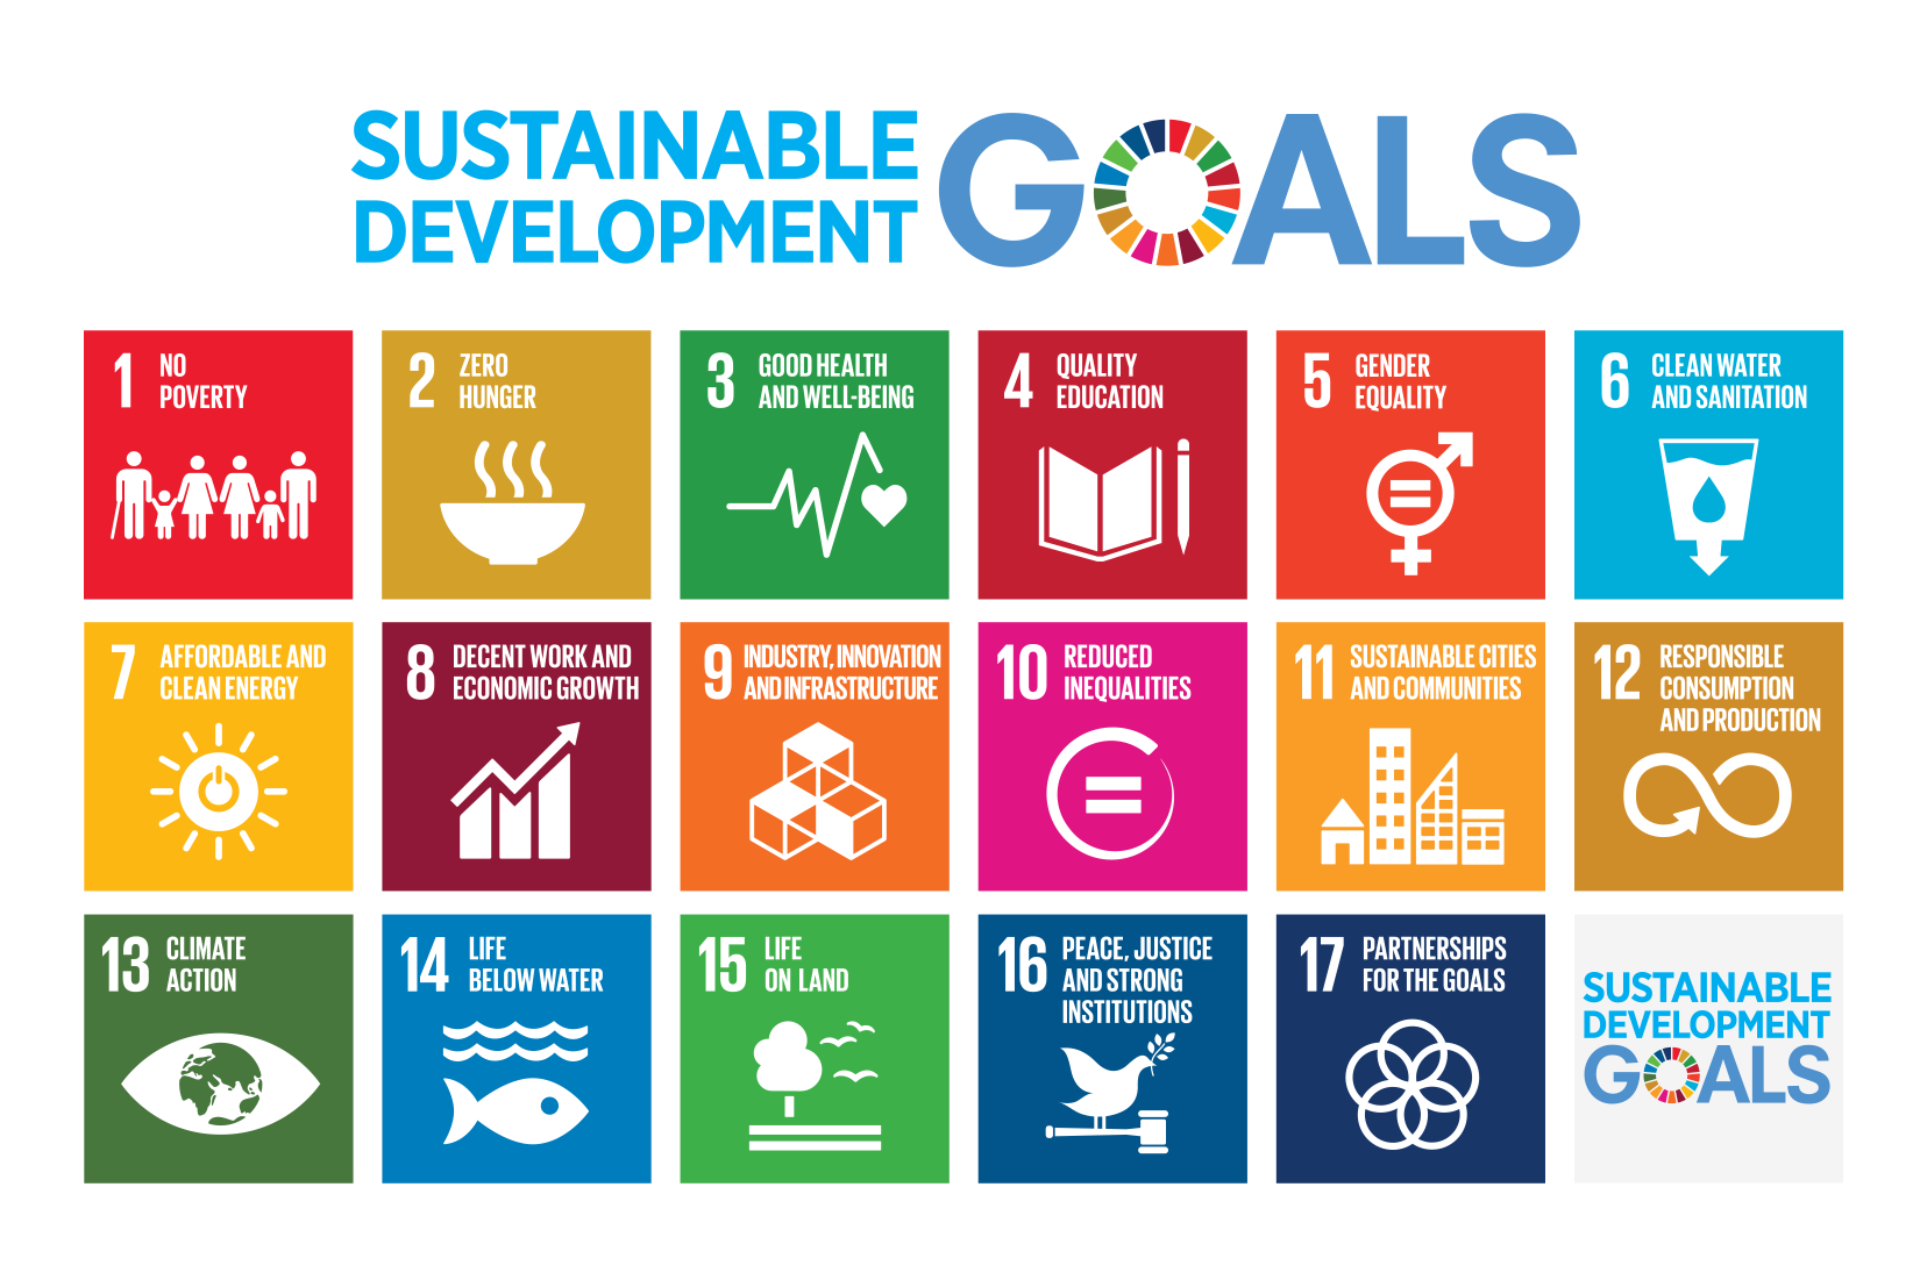 Цели ООН В области устойчивого развития до 2030. 17 Целей устойчивого развития ЦУР ООН. Цели устойчивого развития ООН 2015-2030. Цели устойчивого развития на период до 2030 года.